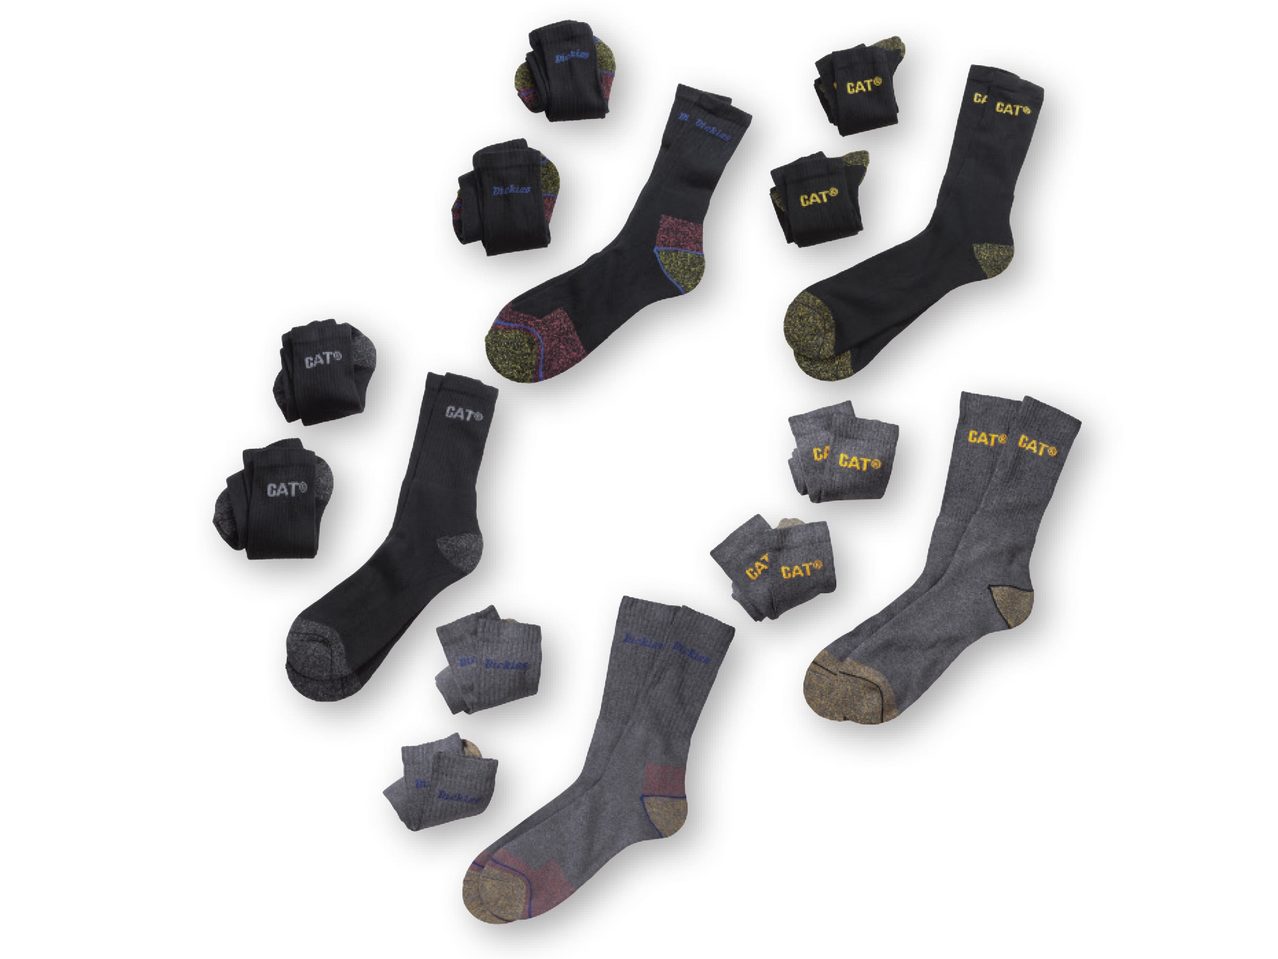 DICKIES(R) Men's Work Socks